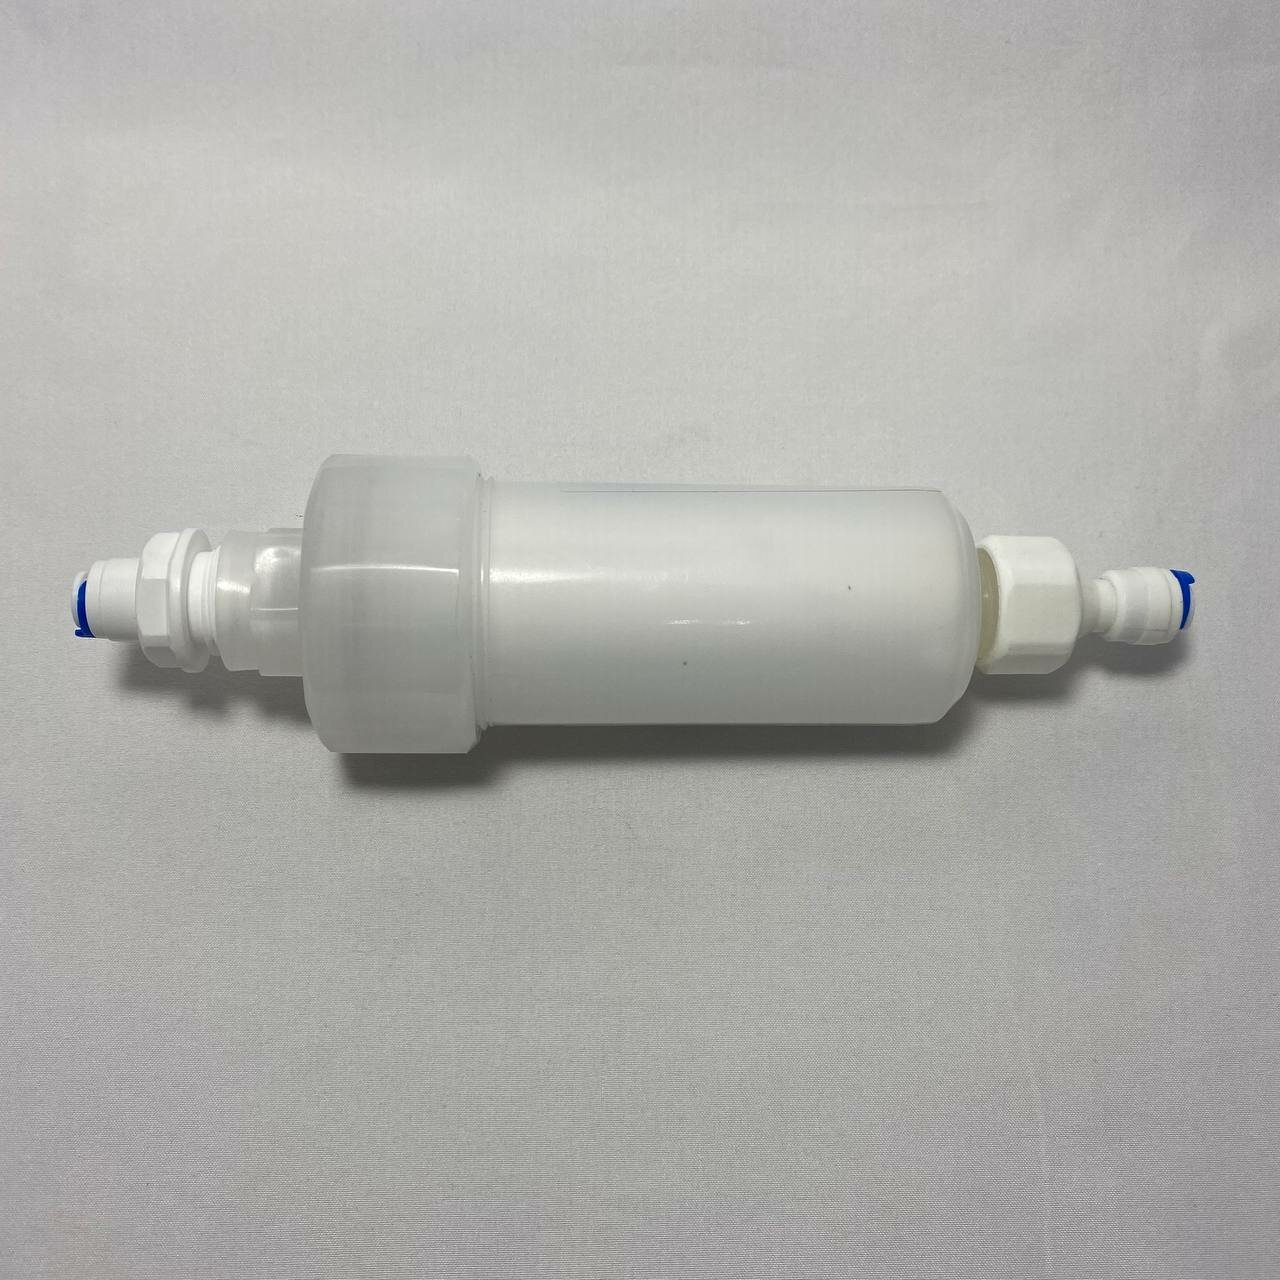 Фильтр механический UFAFILTER со сменным картриджем 5 микрон перед фильтром воды с фитингами 1/4" трубка